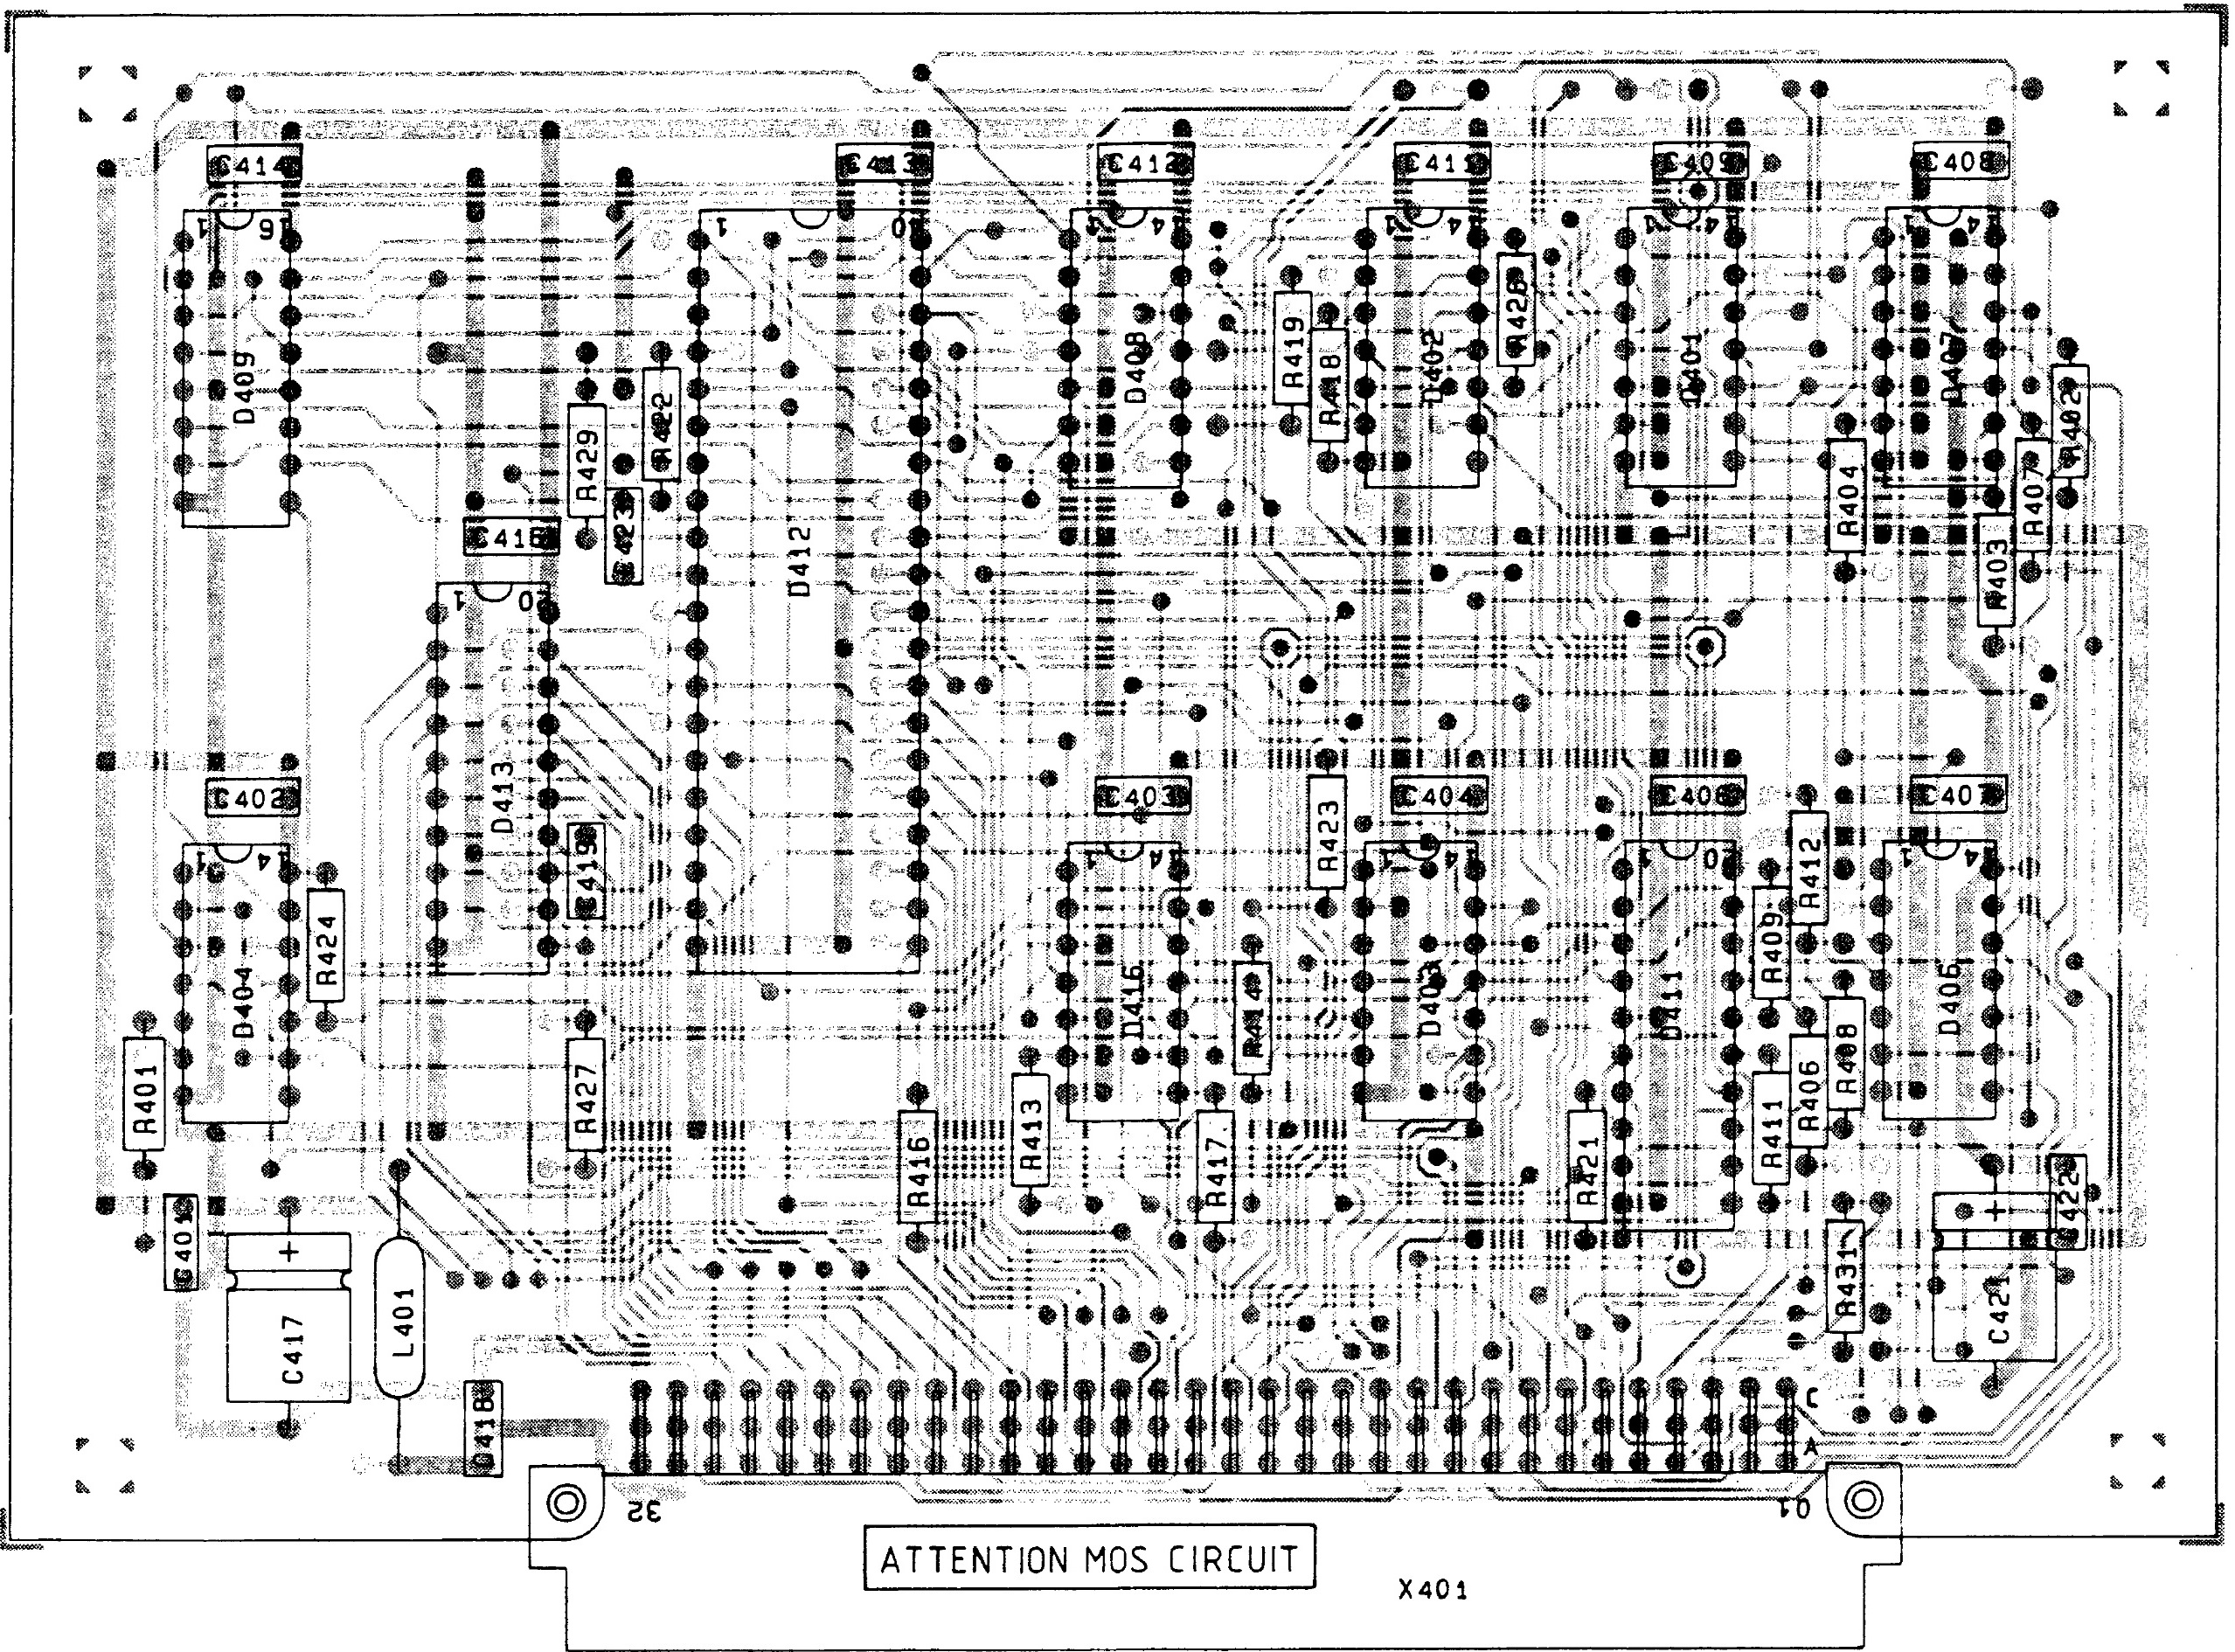 PM3350 circuit board